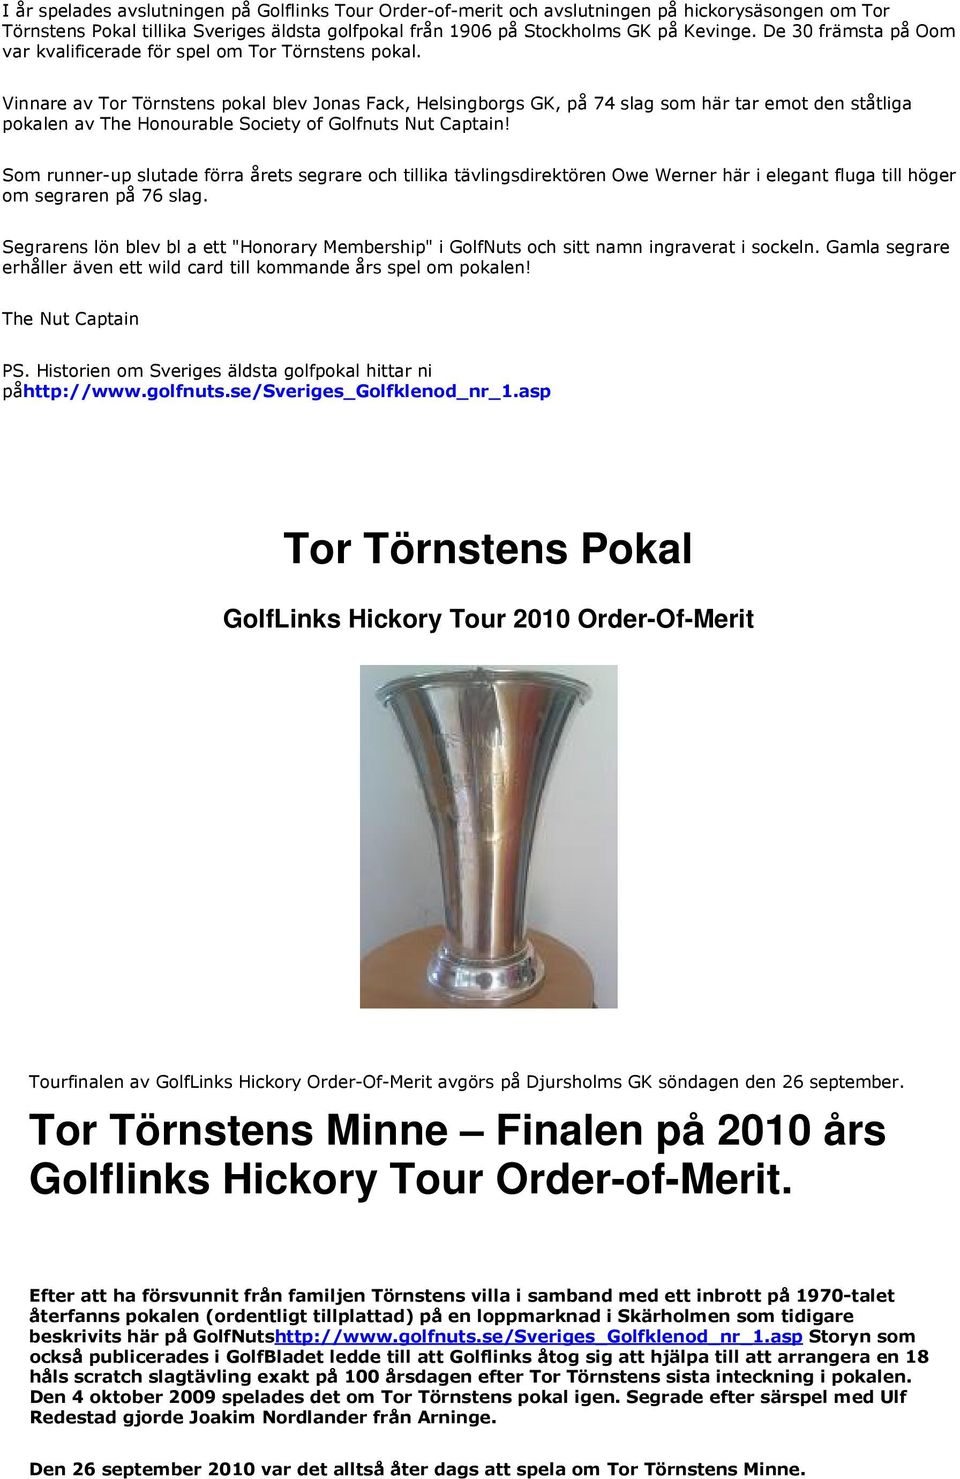 Vinnare av Tor Törnstens pokal blev Jonas Fack, Helsingborgs GK, på 74 slag som här tar emot den ståtliga pokalen av The Honourable Society of Golfnuts Nut Captain!